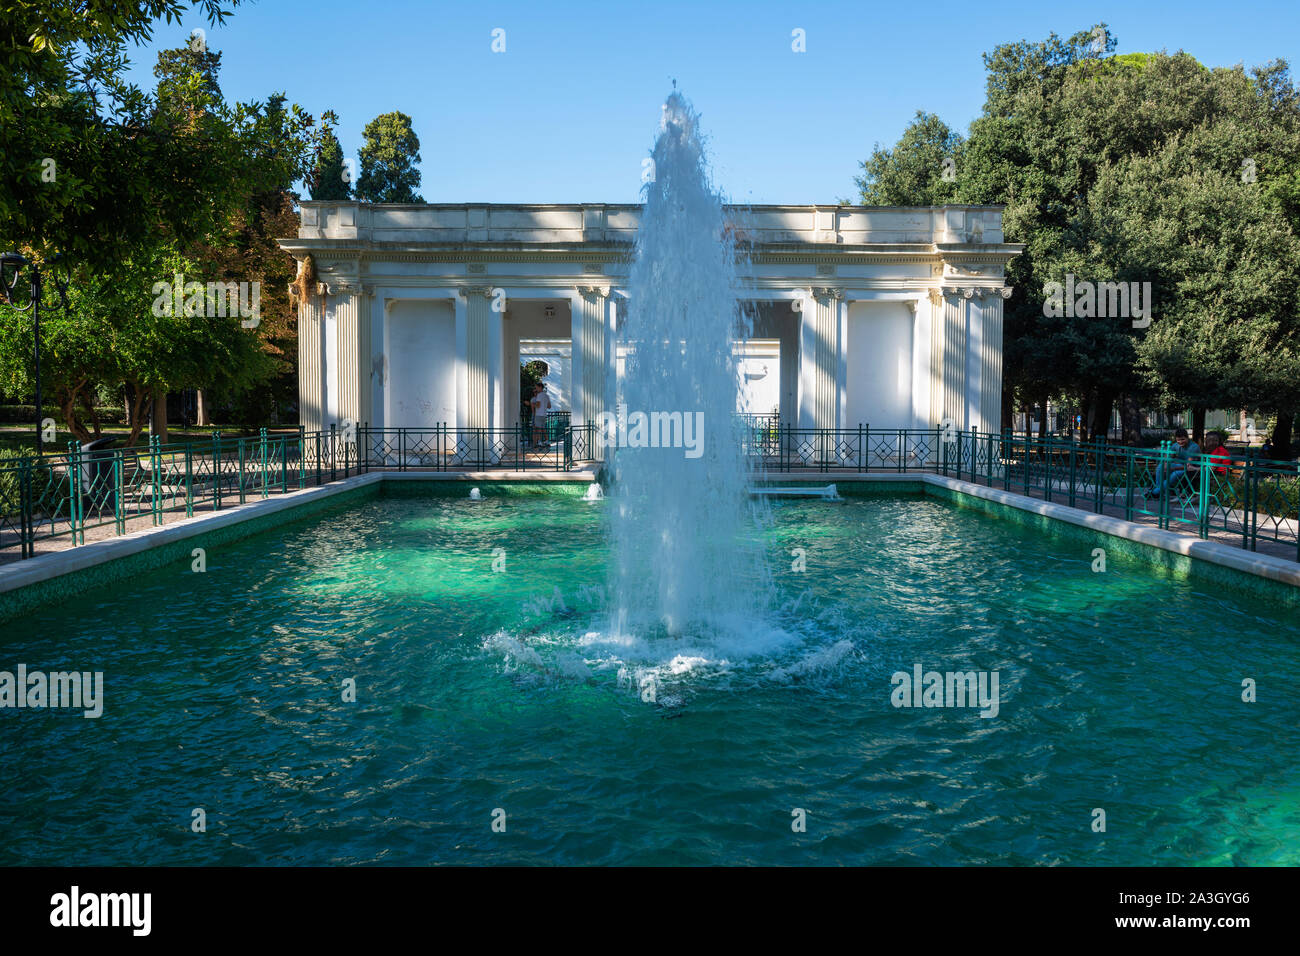 Fountain in Villa Comunale public garden (Giardini Pubblici Giuseppe Garibaldi) in Lecce, Apulia (Puglia) in Southern Italy Stock Photo